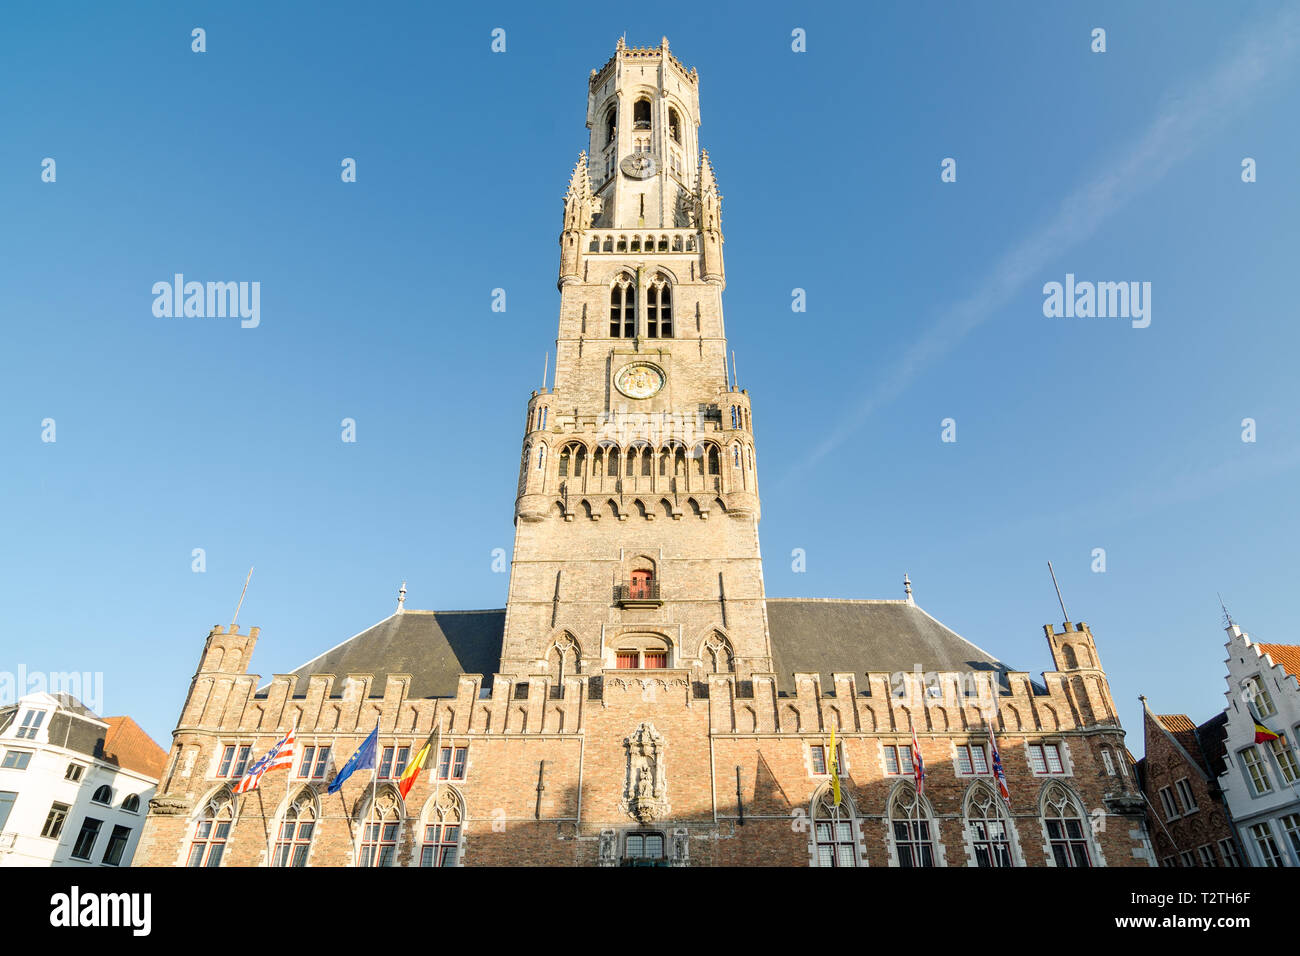 Der Belfried von Brügge ist eine mittelalterliche Glockenturm im historischen Zentrum von Brügge, Belgien. Stockfoto